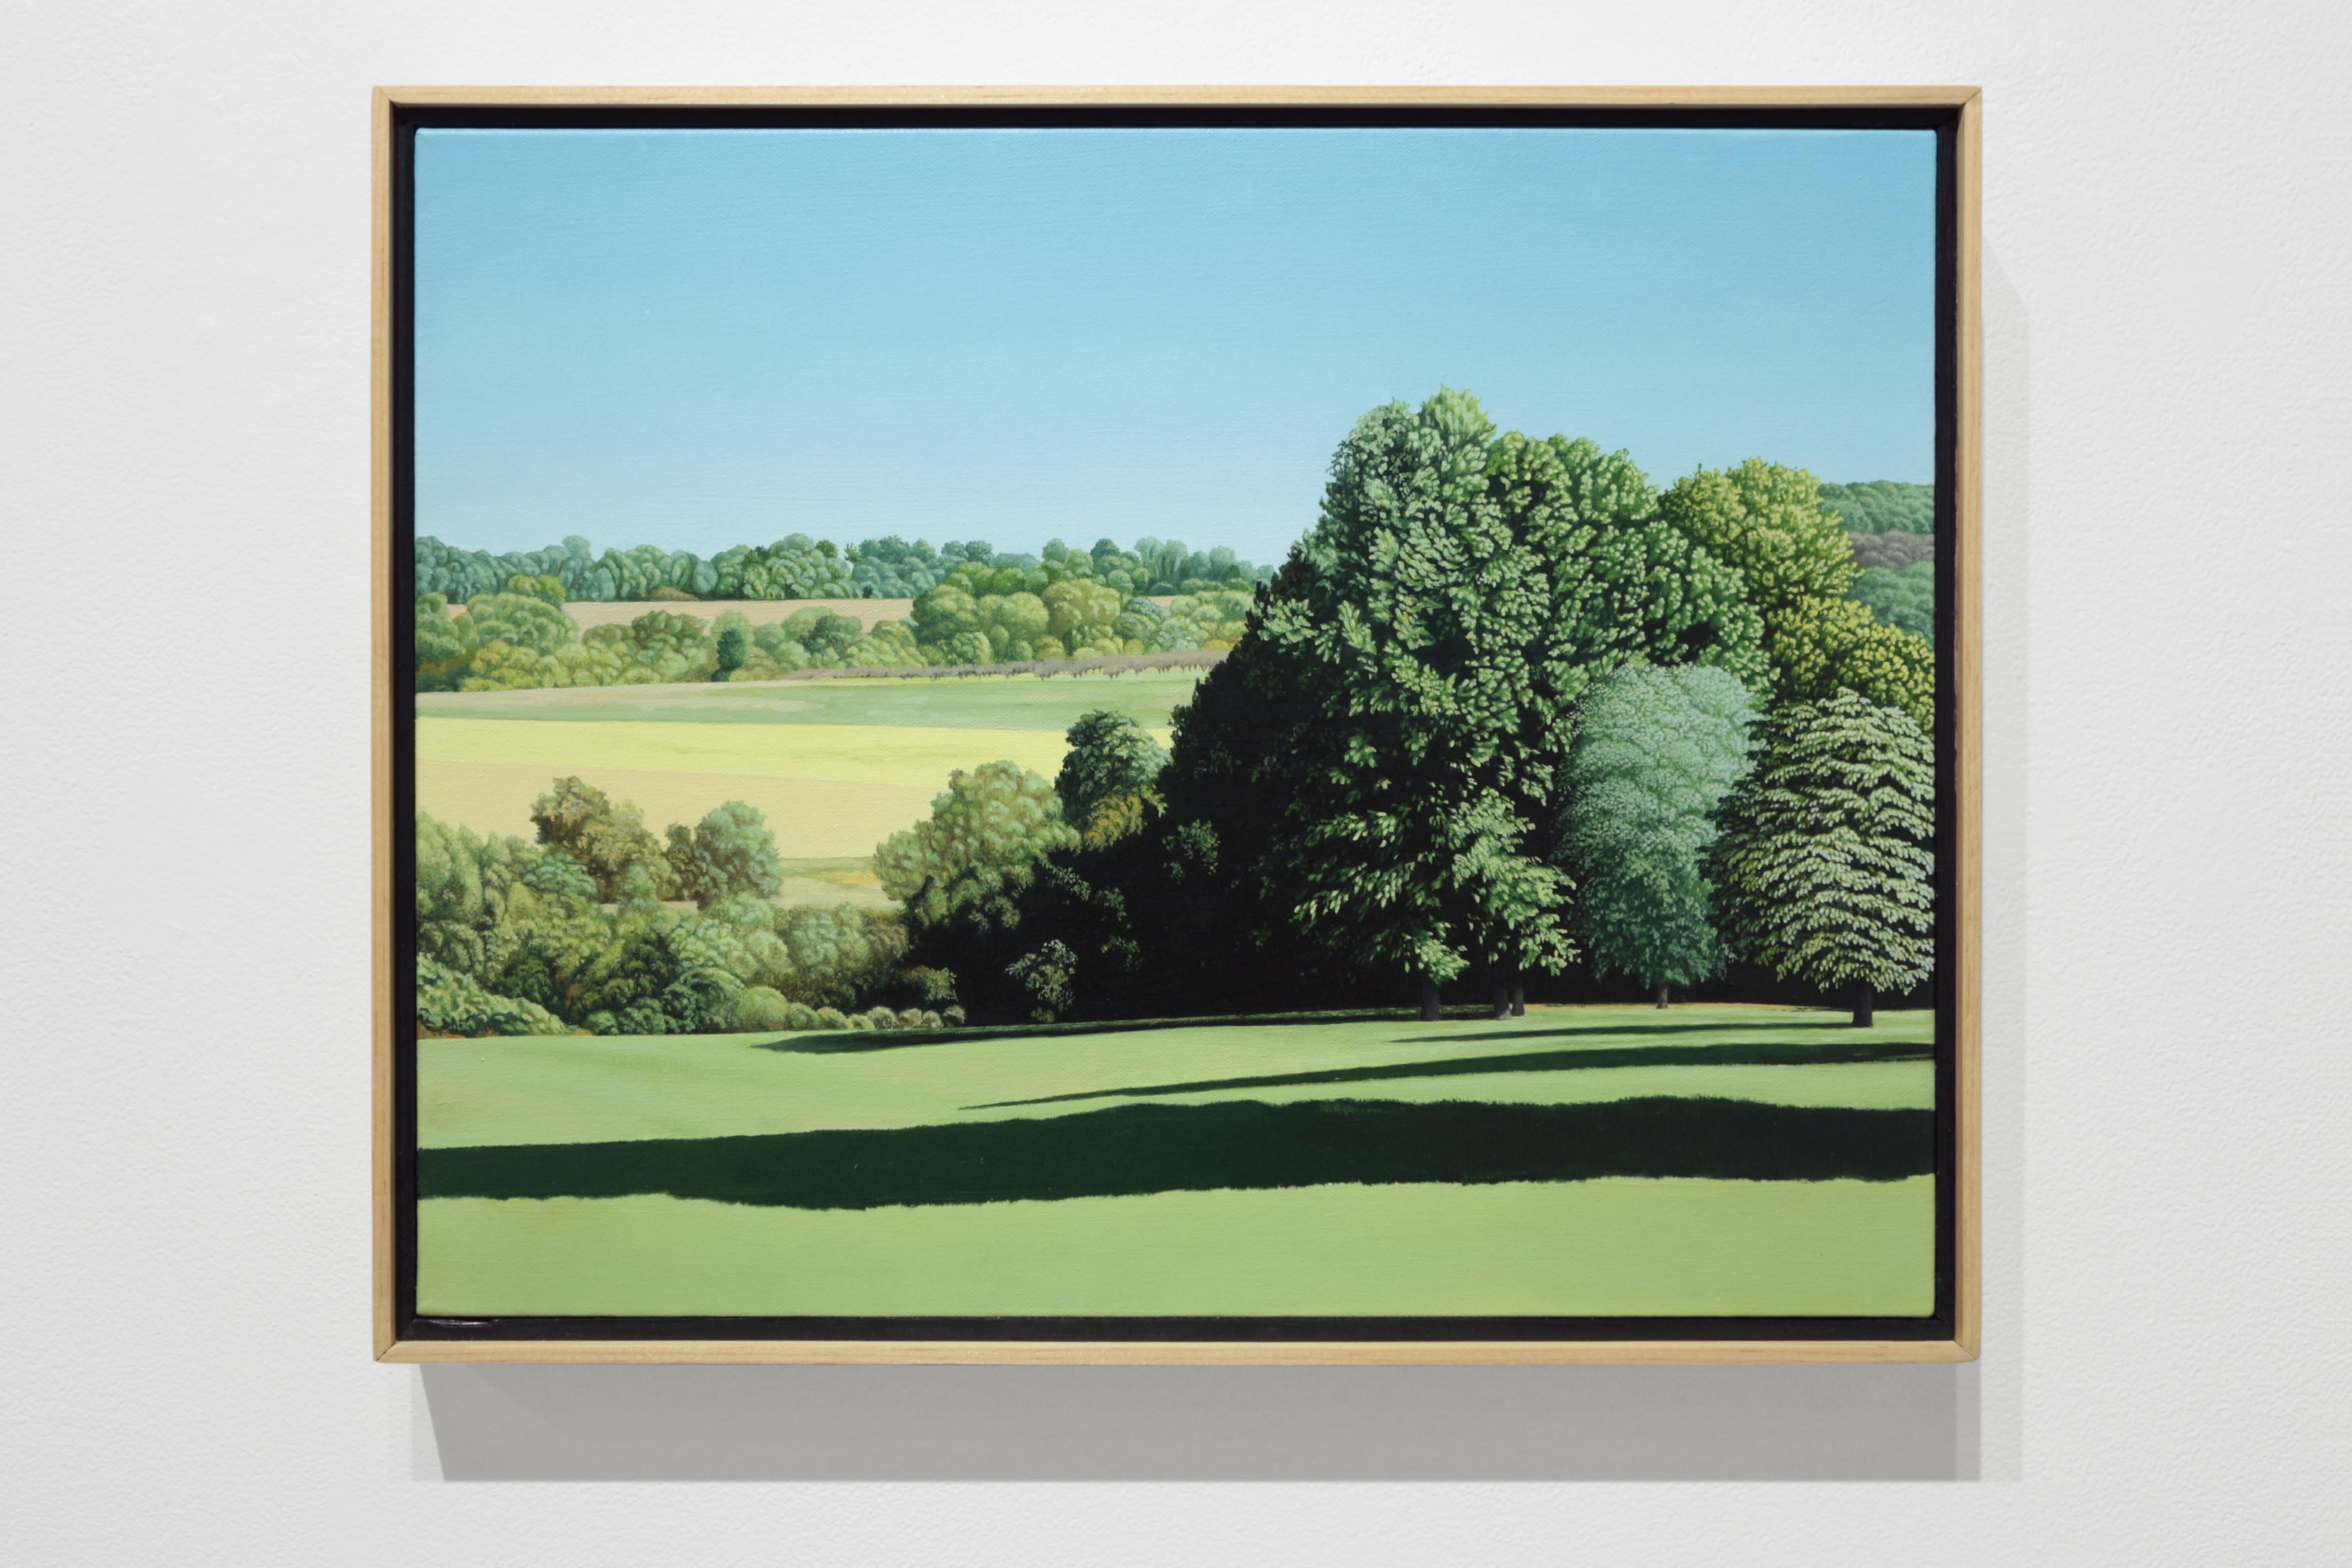 LONG SHADOWS IN THE MORNING – zeitgenössischer Realismus / Country Park / Naturszene – Painting von Anita Mazzucca